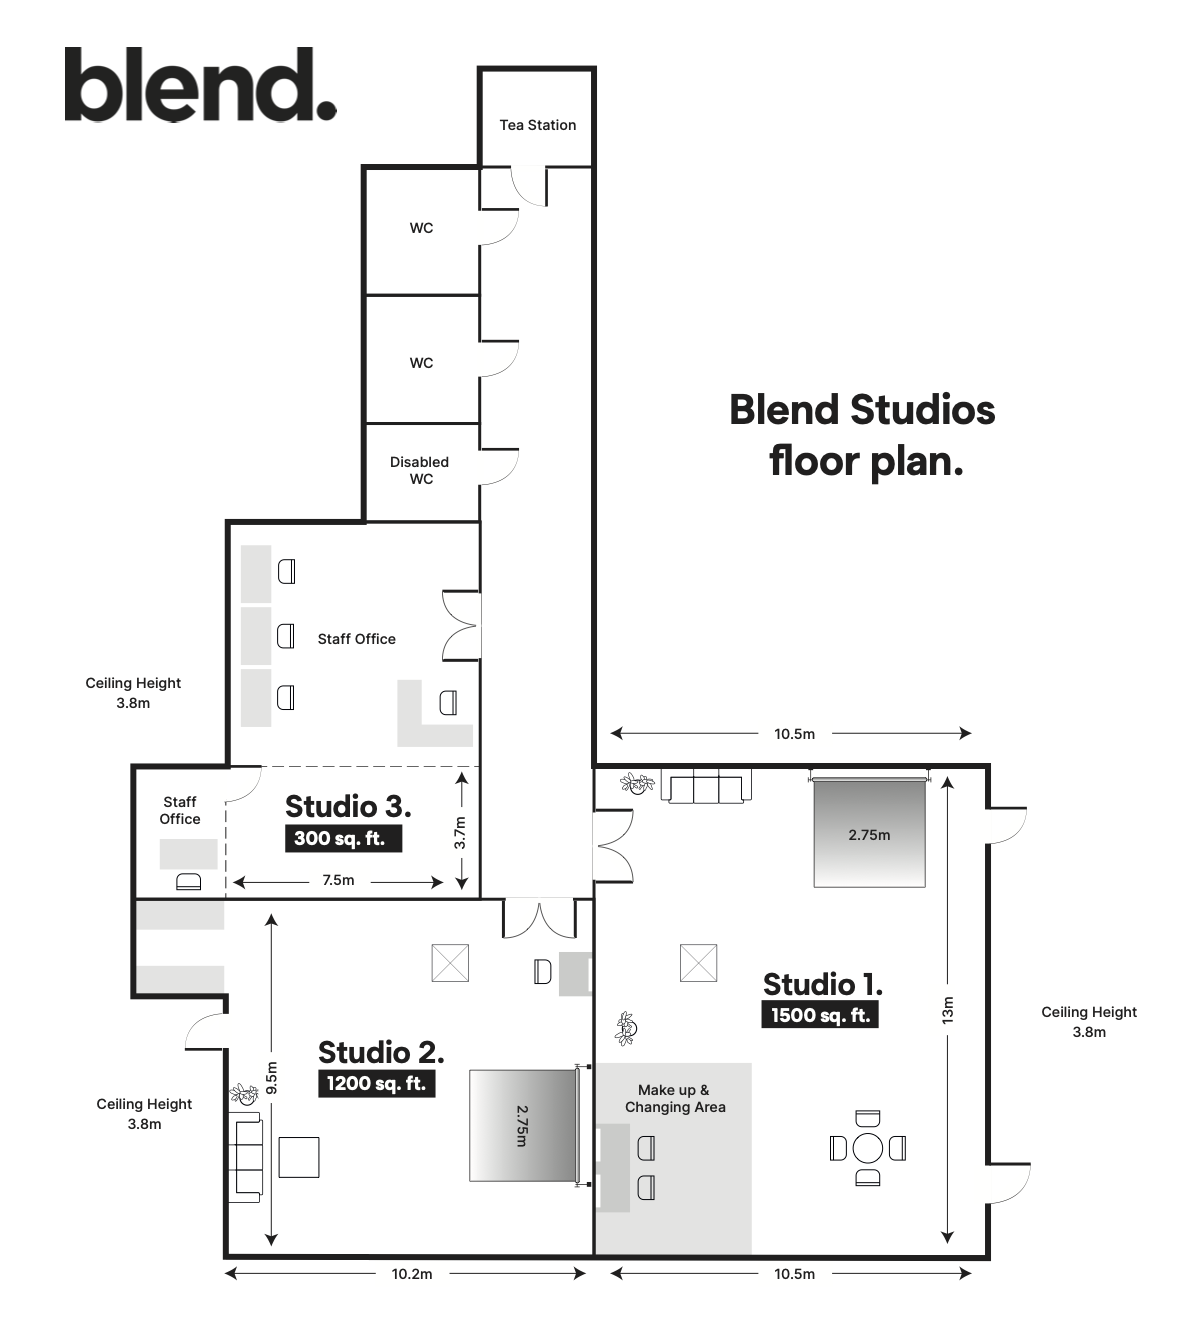 Blend Studios